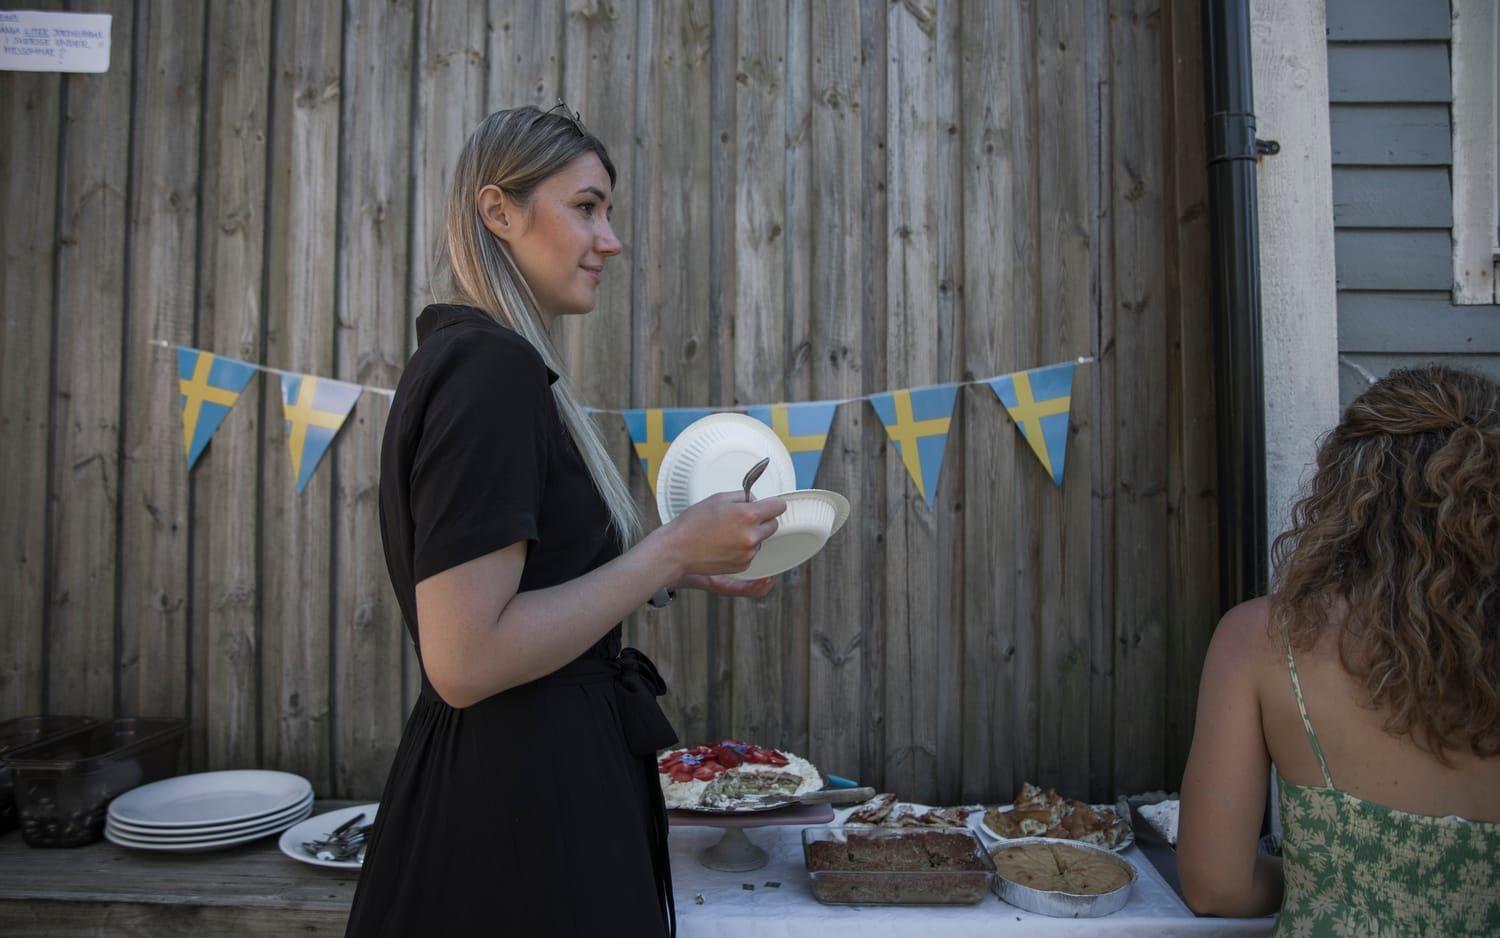 Tatiana Pylova, kardiolog och forskare, firar sin första midsommar i Sverige. 